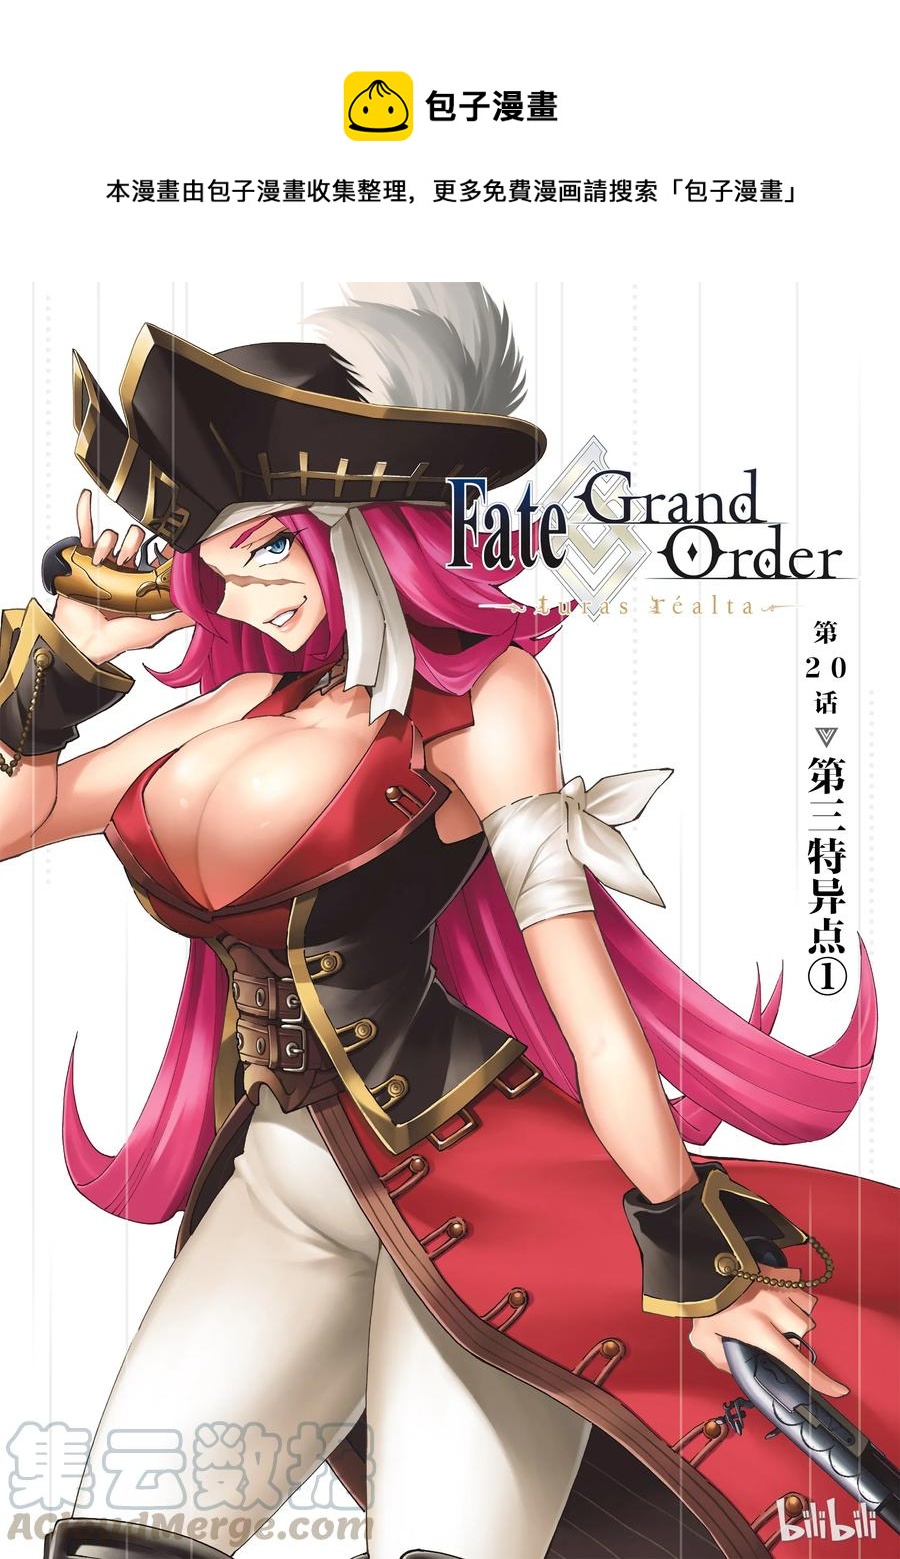 Fate/Grand Order-turas realta- - 20 第三特異點① - 1